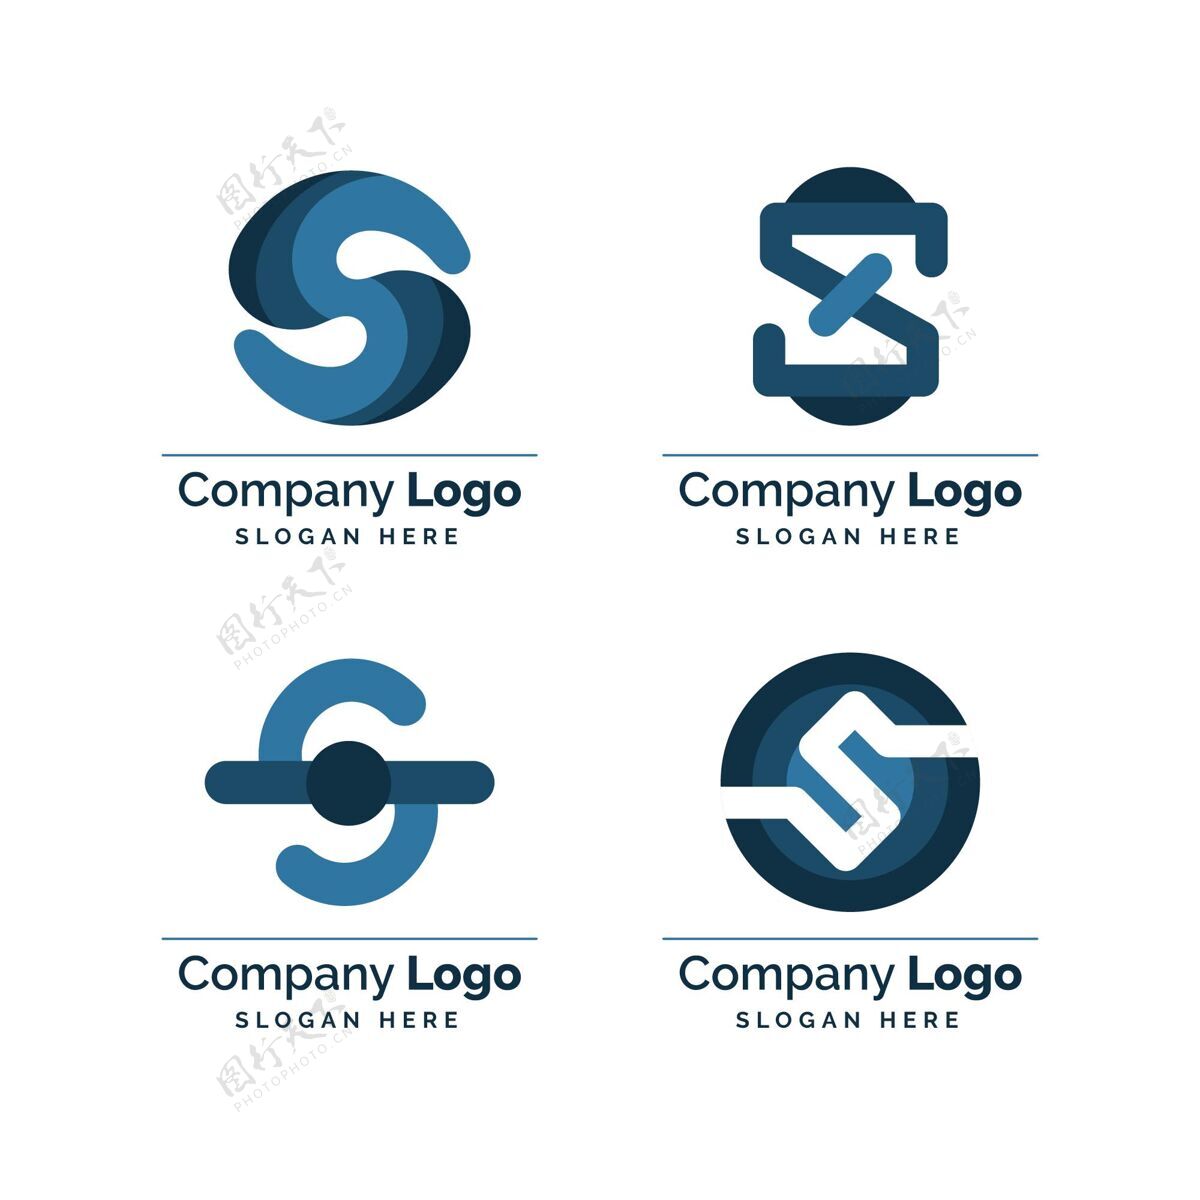 平面设计收集创意平面s标志企业标识品牌公司标识